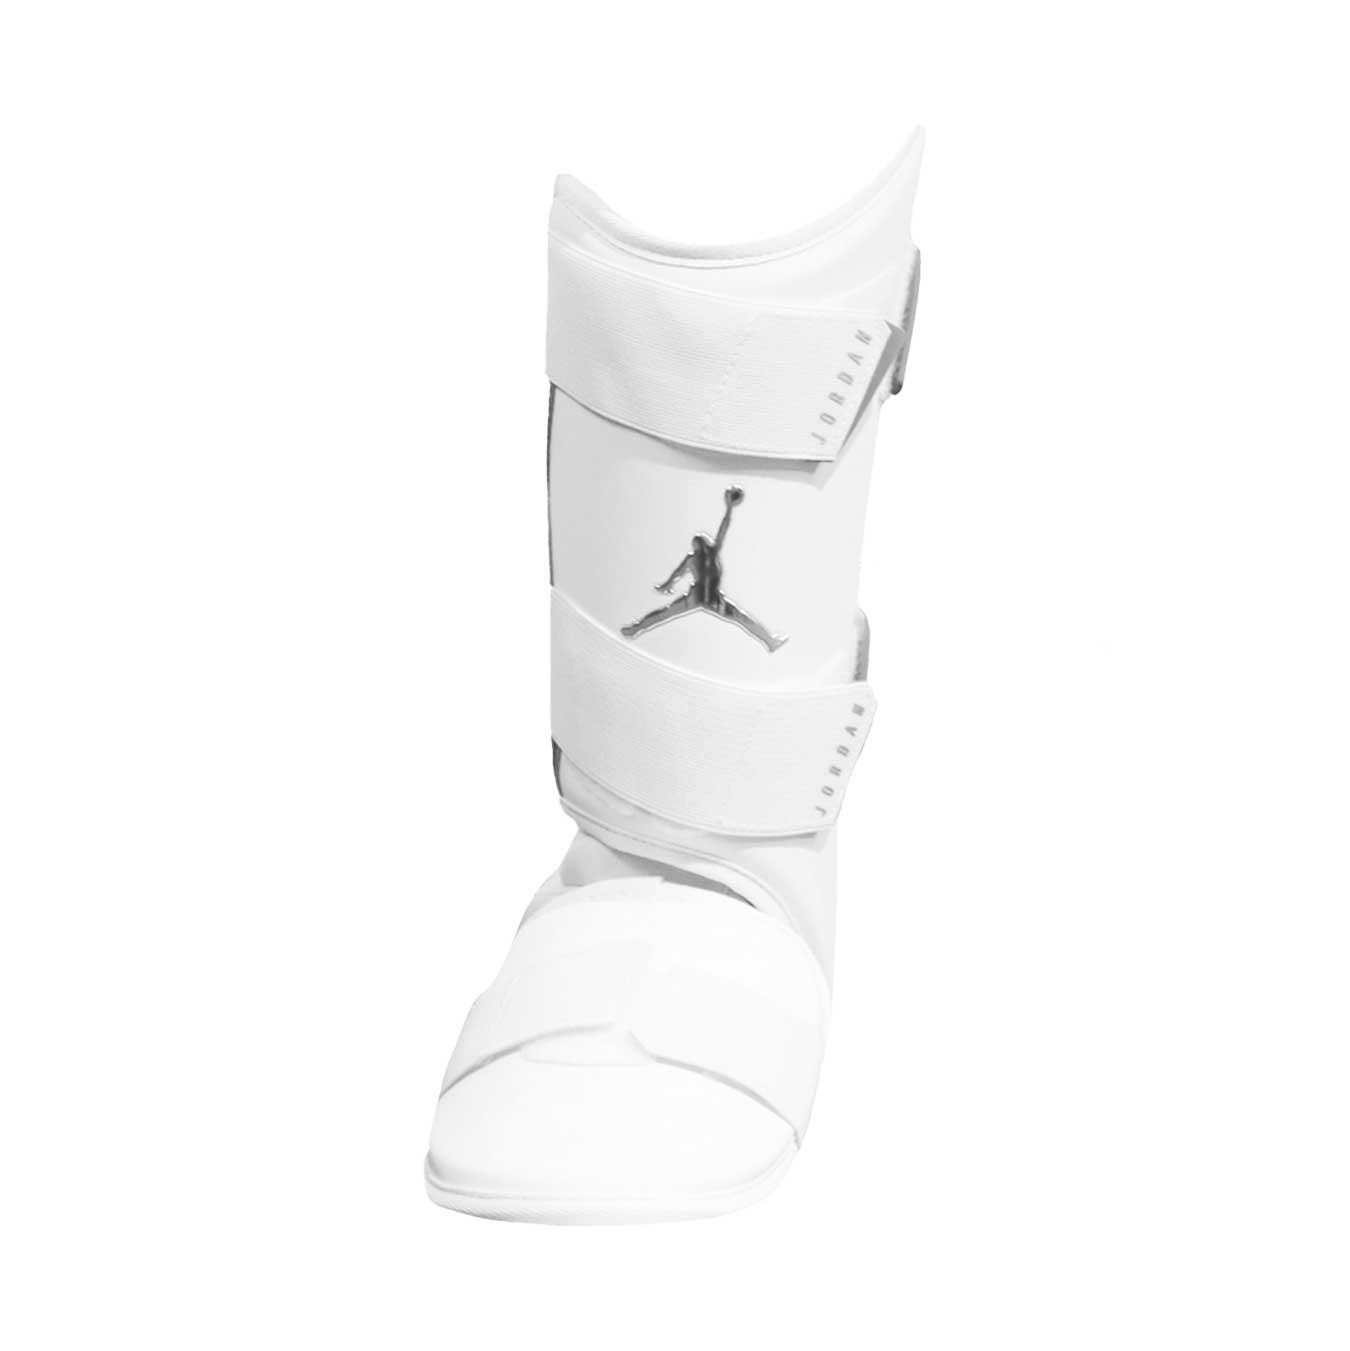 Jordan Fly Batters Leg Guard White -Right Hand Hitter